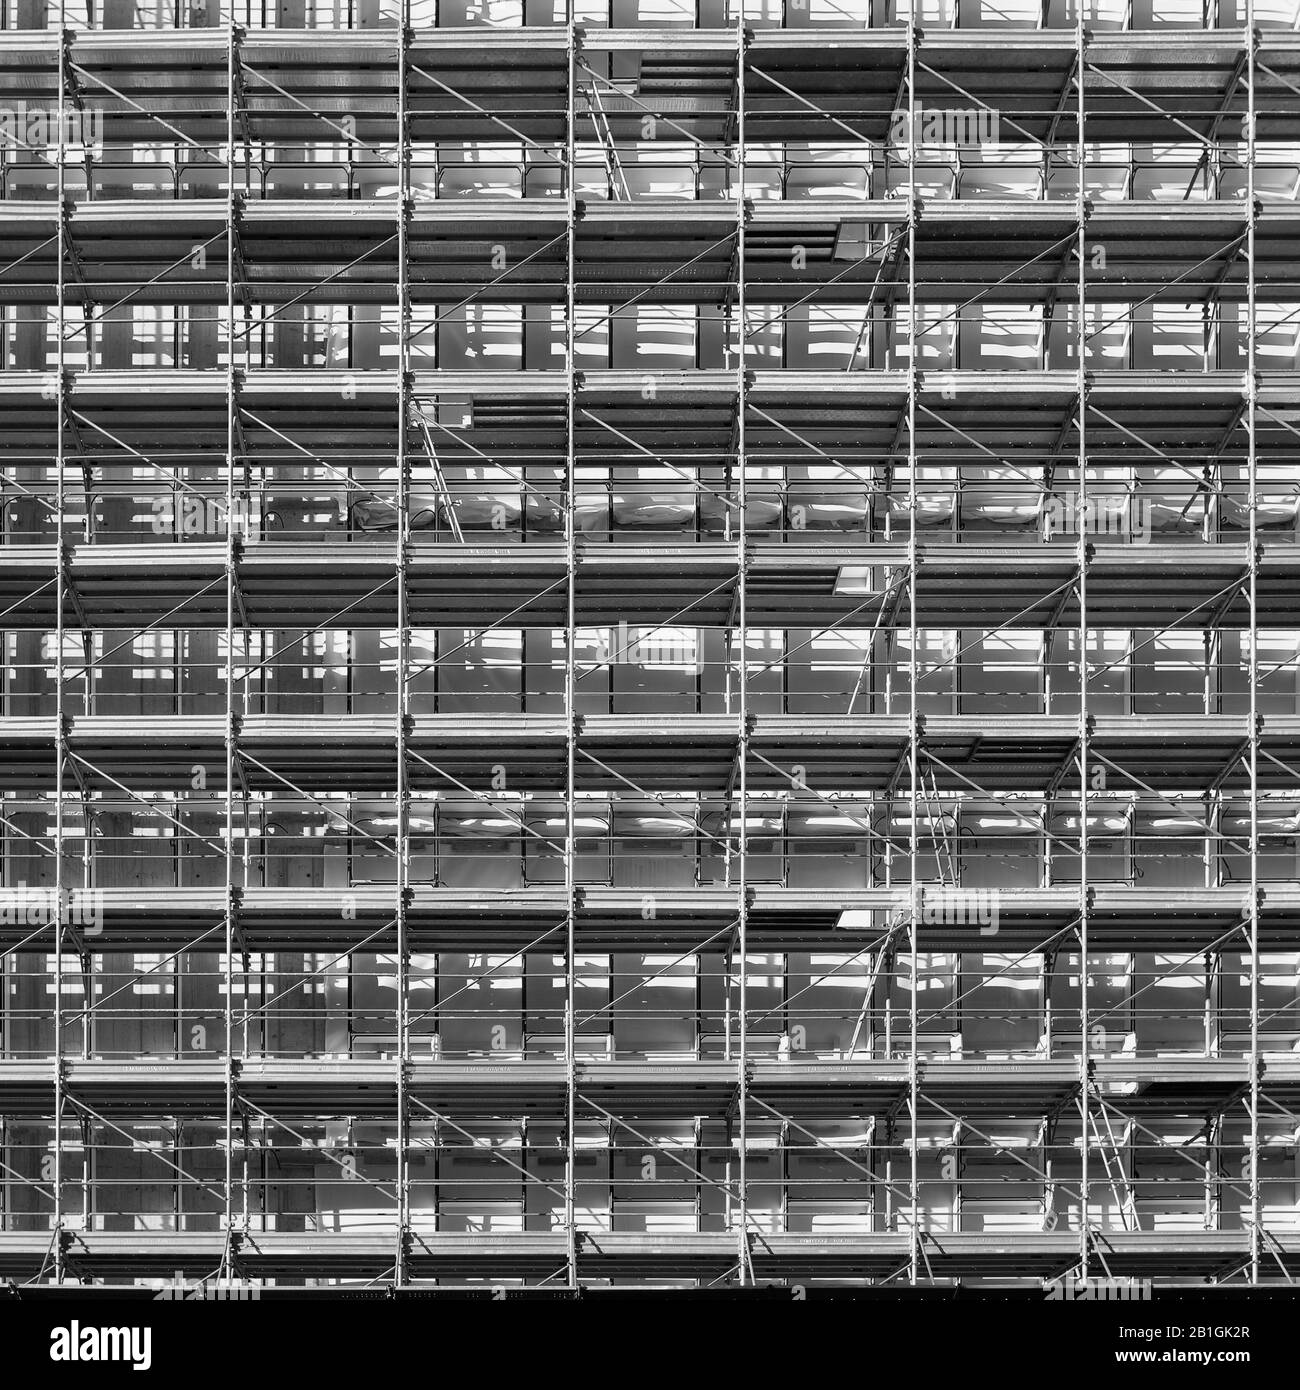 Impalcatura sulla facciata durante la costruzione di un edificio Di Simbiosi nella periferia sud di Milano, in Italia, presso la Fondazione Prada Foto Stock